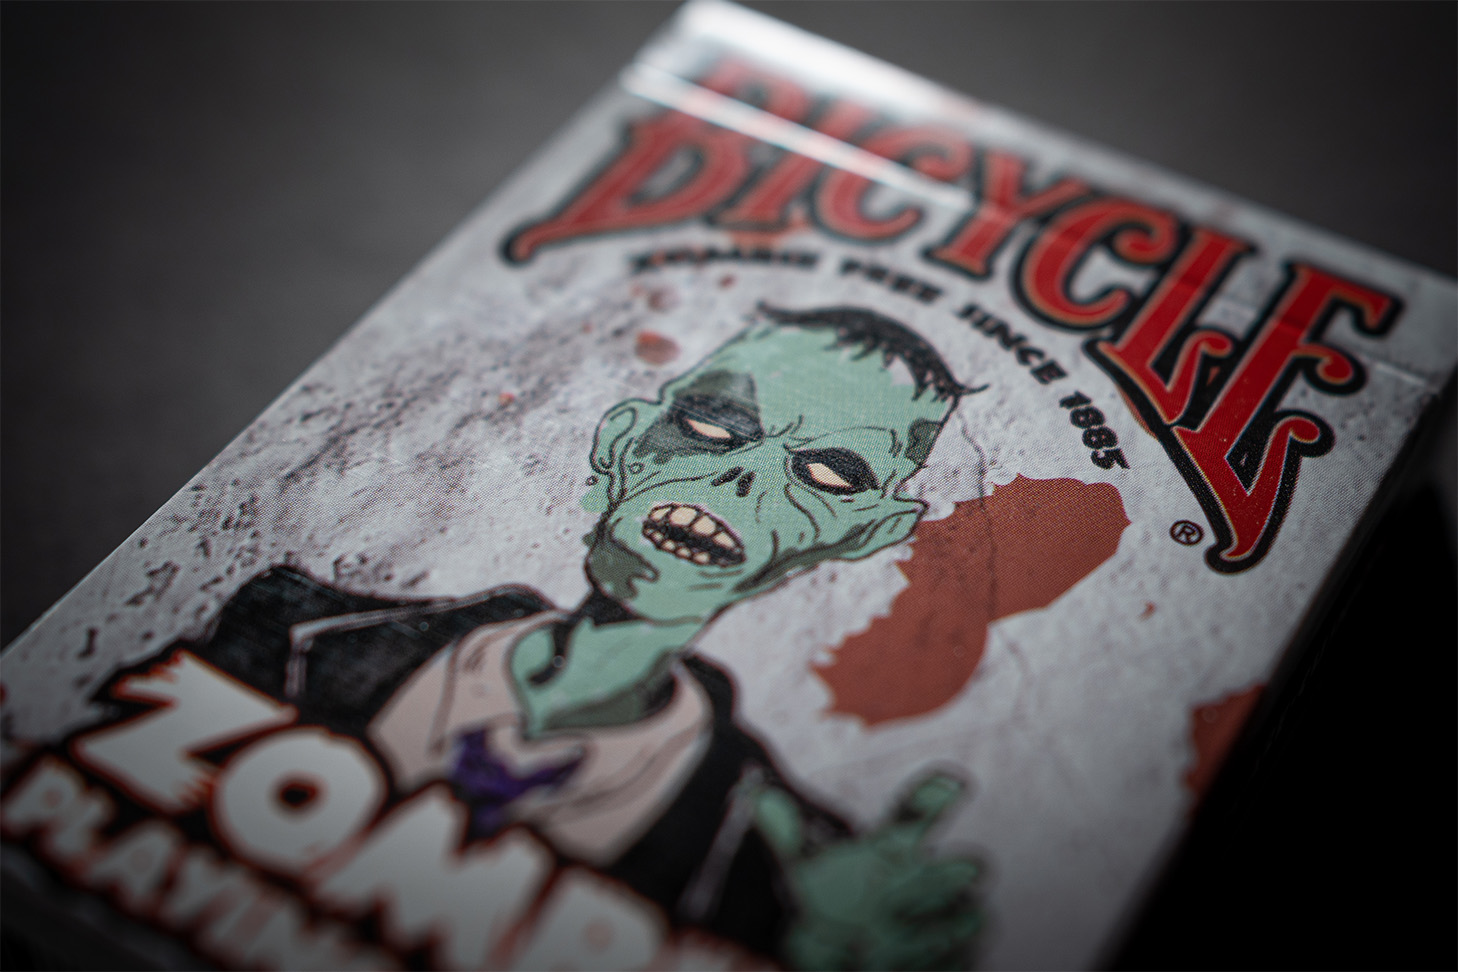 Zu sehen ist eine Detailaufnahme der Premium-Zombie-Spielkarten von Bicycle. Diese edlen Bicycle® Zombie eignen sich perfekt für Zaubertricks, Magie und gute Kartenspiele. Das Design der Schachtel ist perfekt für Halloween und Zombie-Themenpartys geeignet.